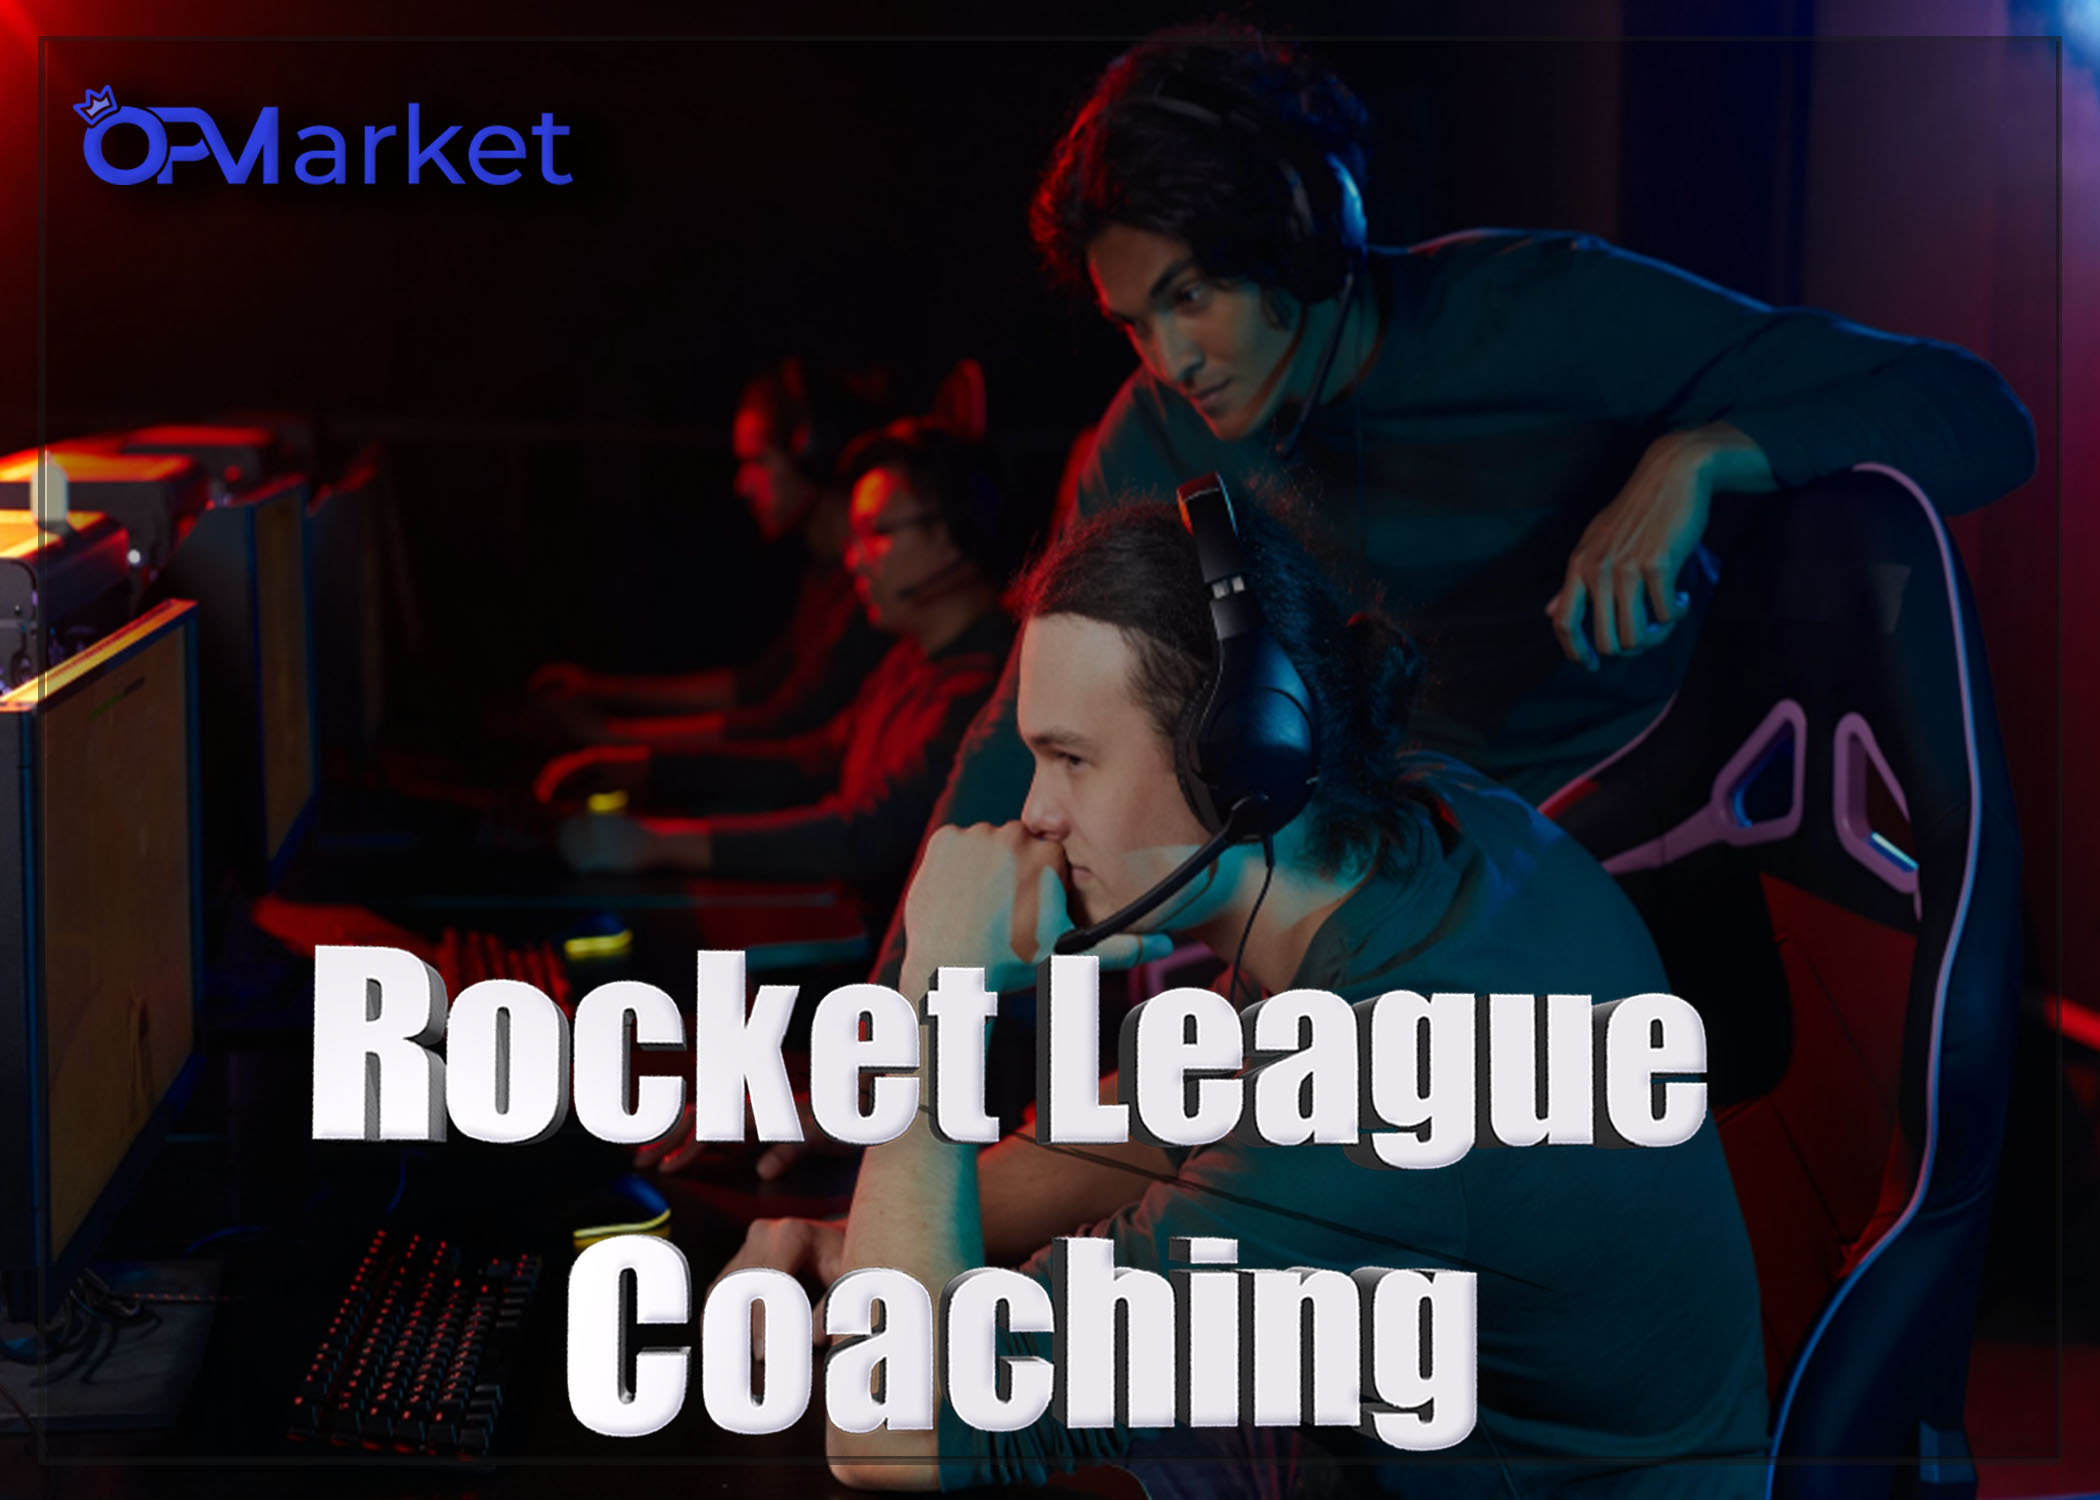 Rocket League Coaching: Find the Best Rocket League Coach